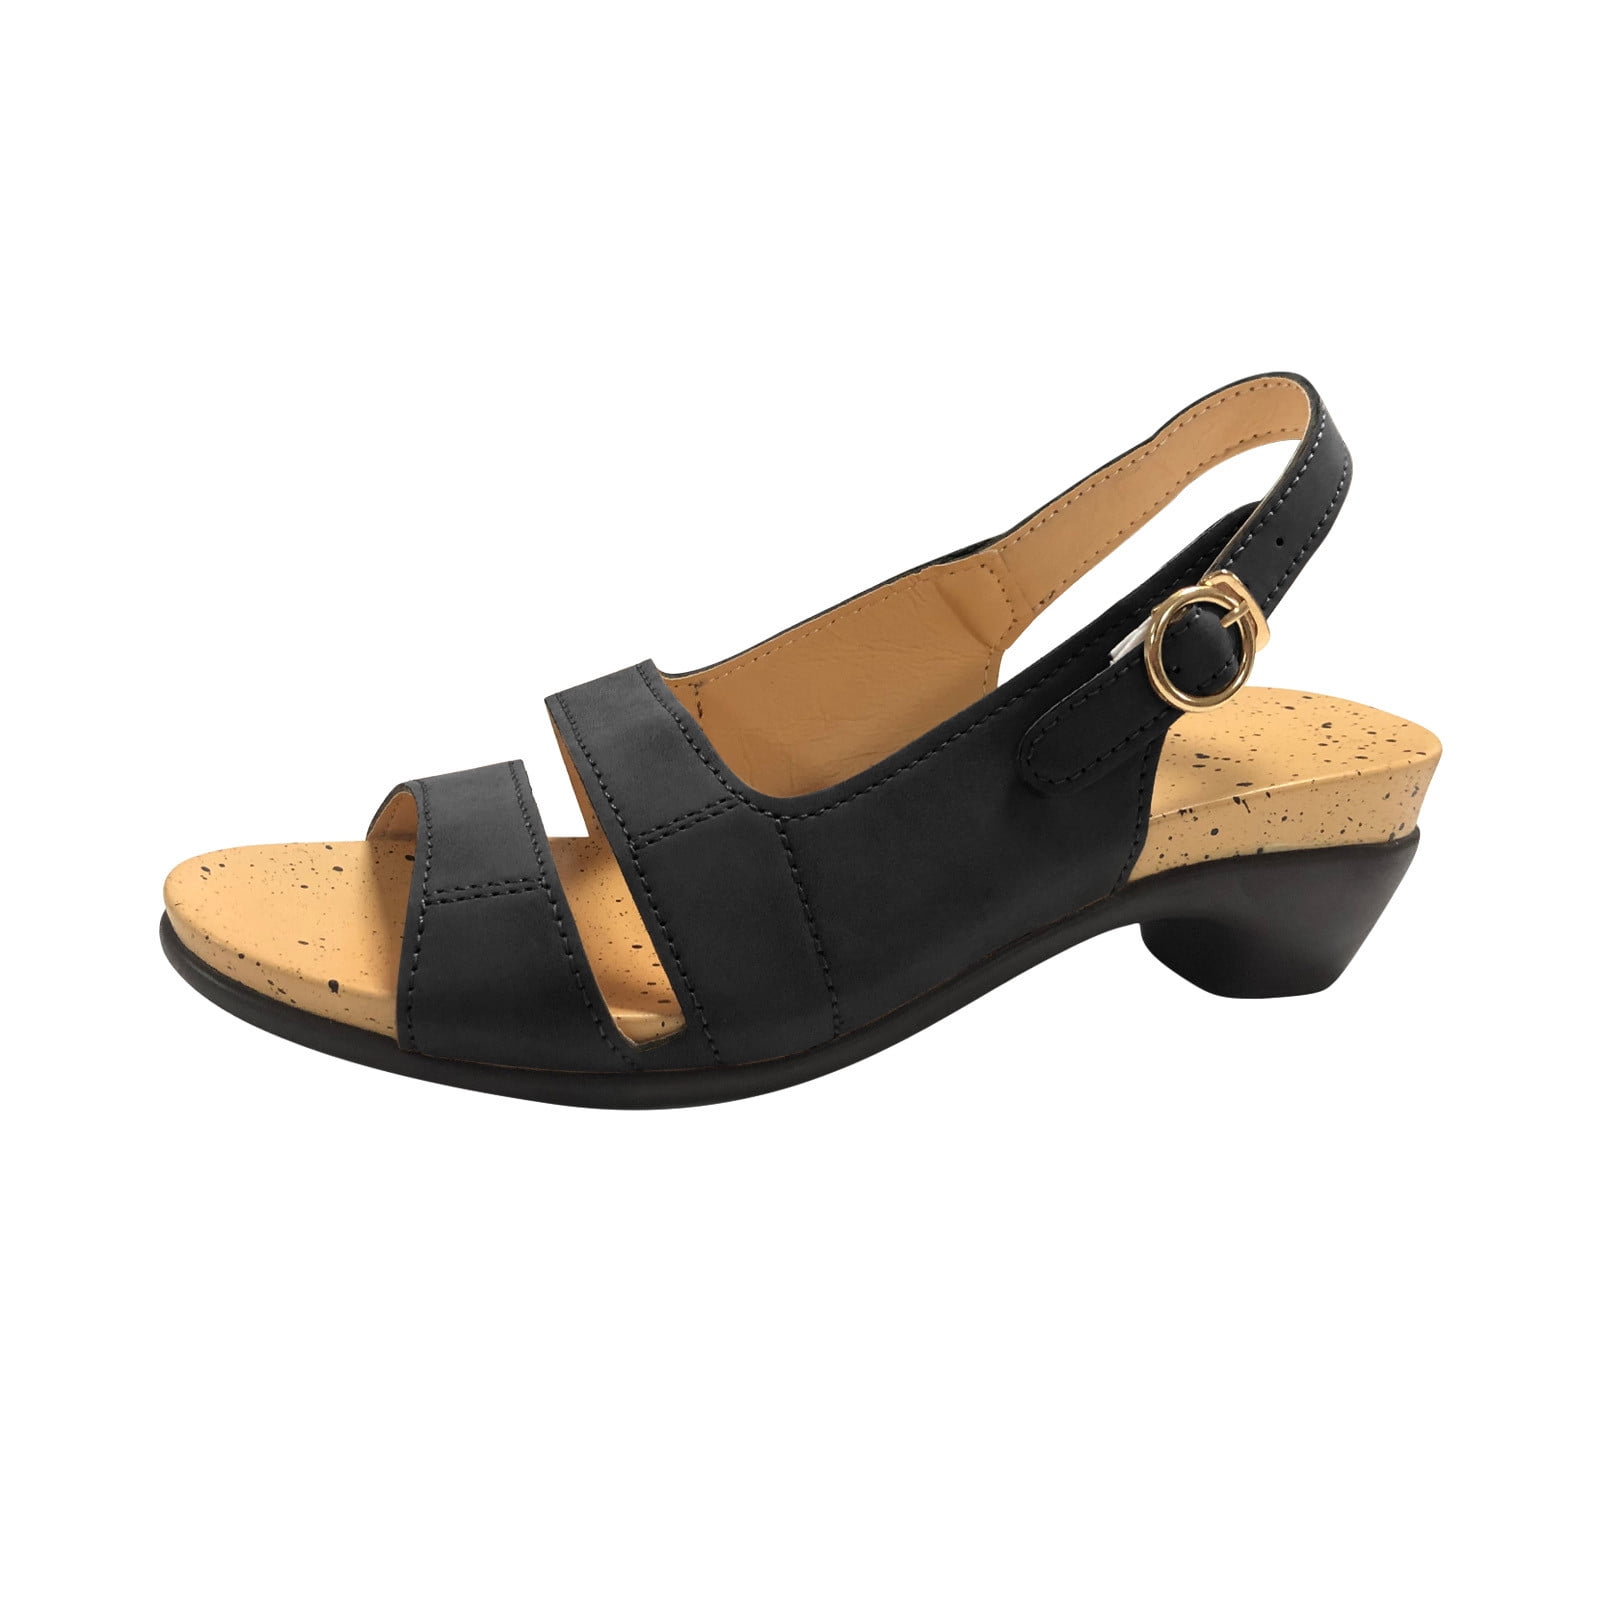 Fanxing Sandals for Women Open Toe Ankle Strap Platform Dress Low Heel ...